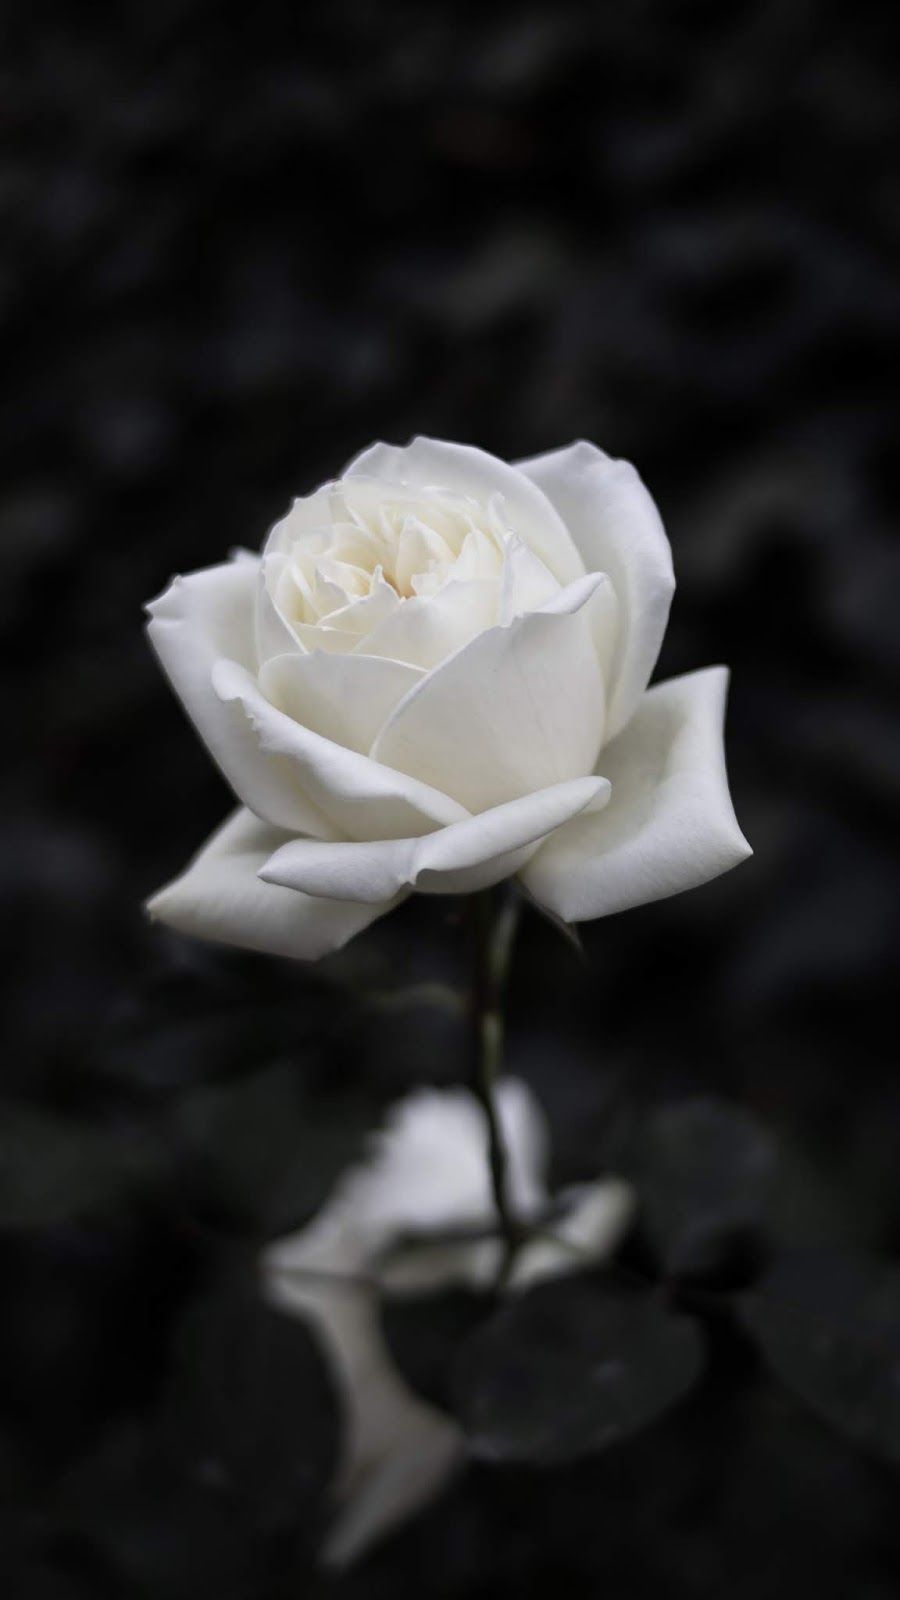 White rose. Rose flower wallpaper, Dark background wallpaper